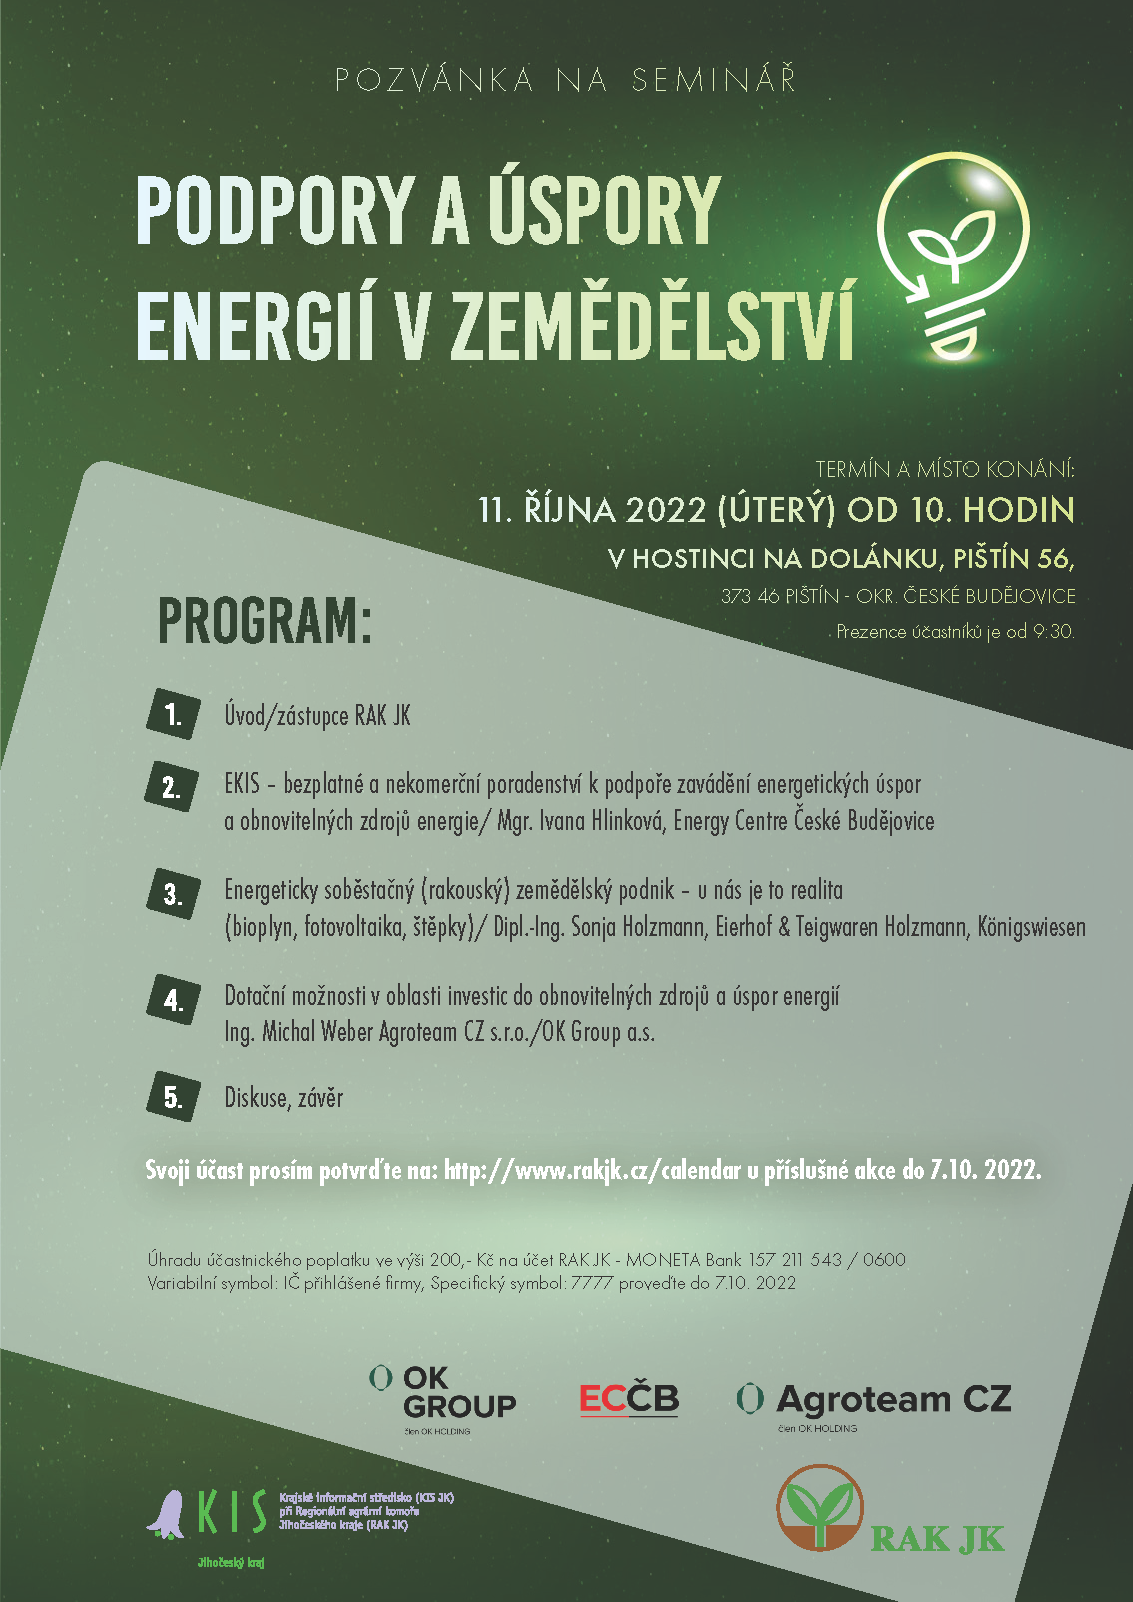 https://www.agroteam.cz/media/aktuality/obecne-aktuality/seminar-uspora-energie.png